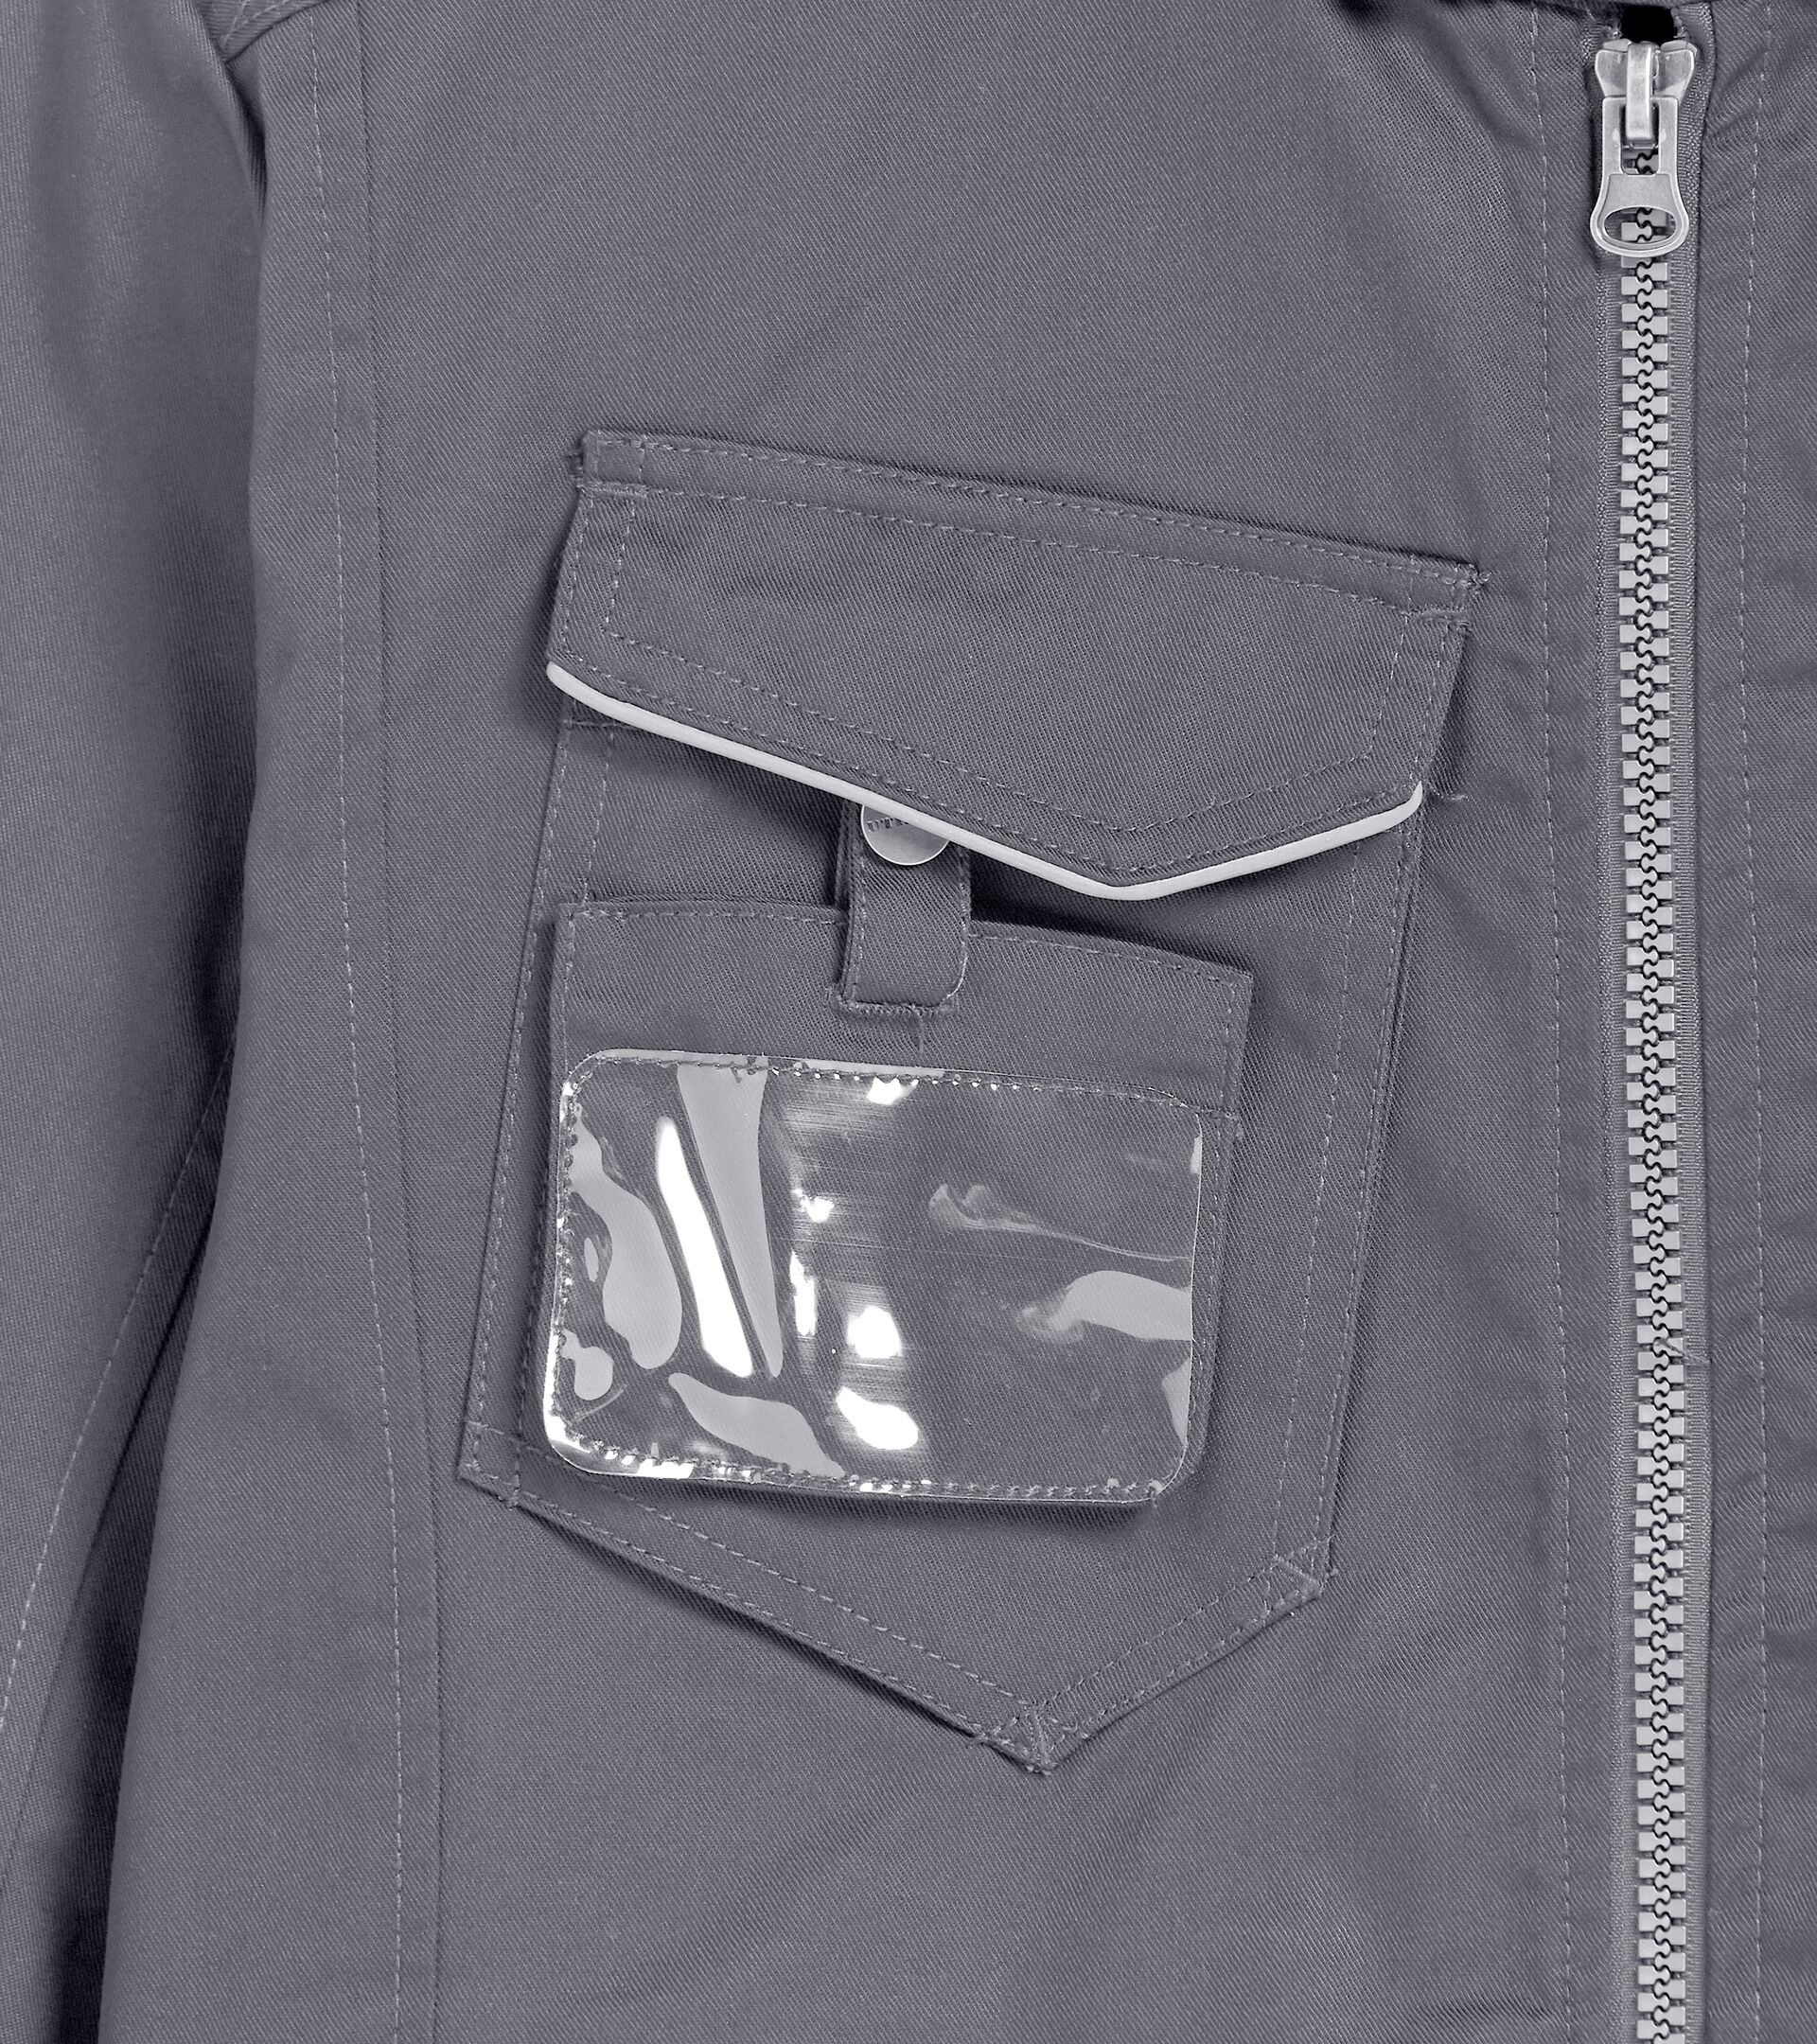 Work jacket WW JACKET POLY STEEL GRAY - Utility